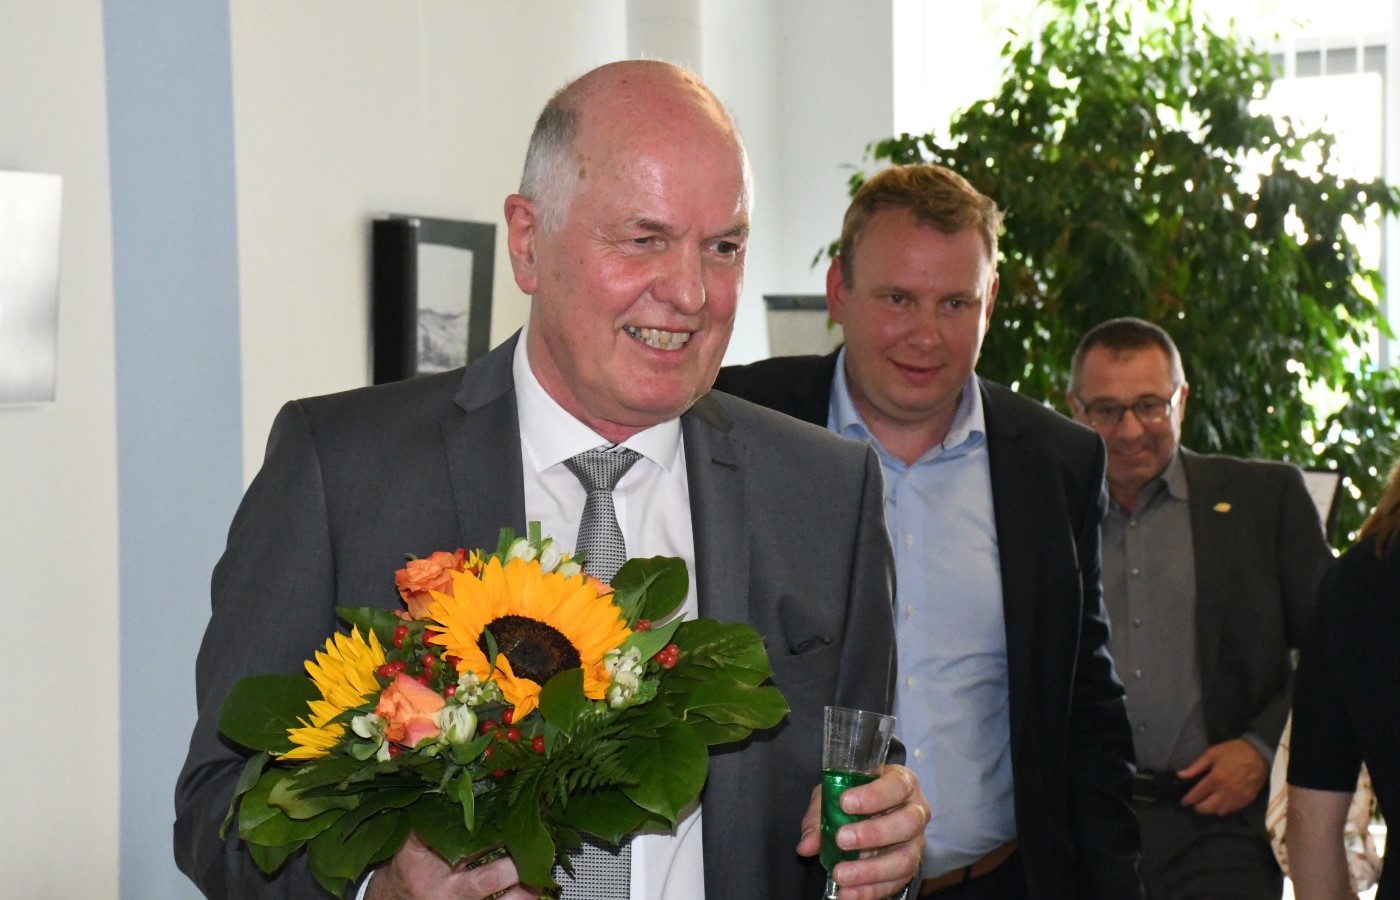 Verabschiedung von Dr. Johannes Berentelg, Chefarzt Innere Medizin, in der GRN-Klinik Sinsheim